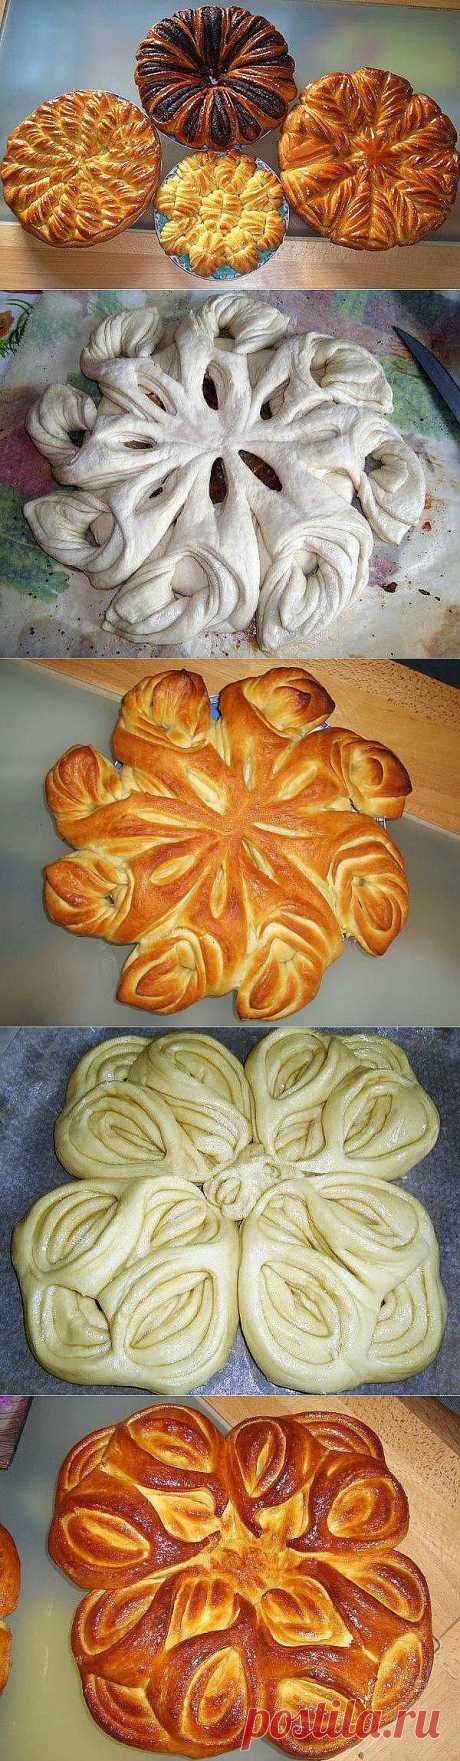 Творческий подход к оформлению пирогов.